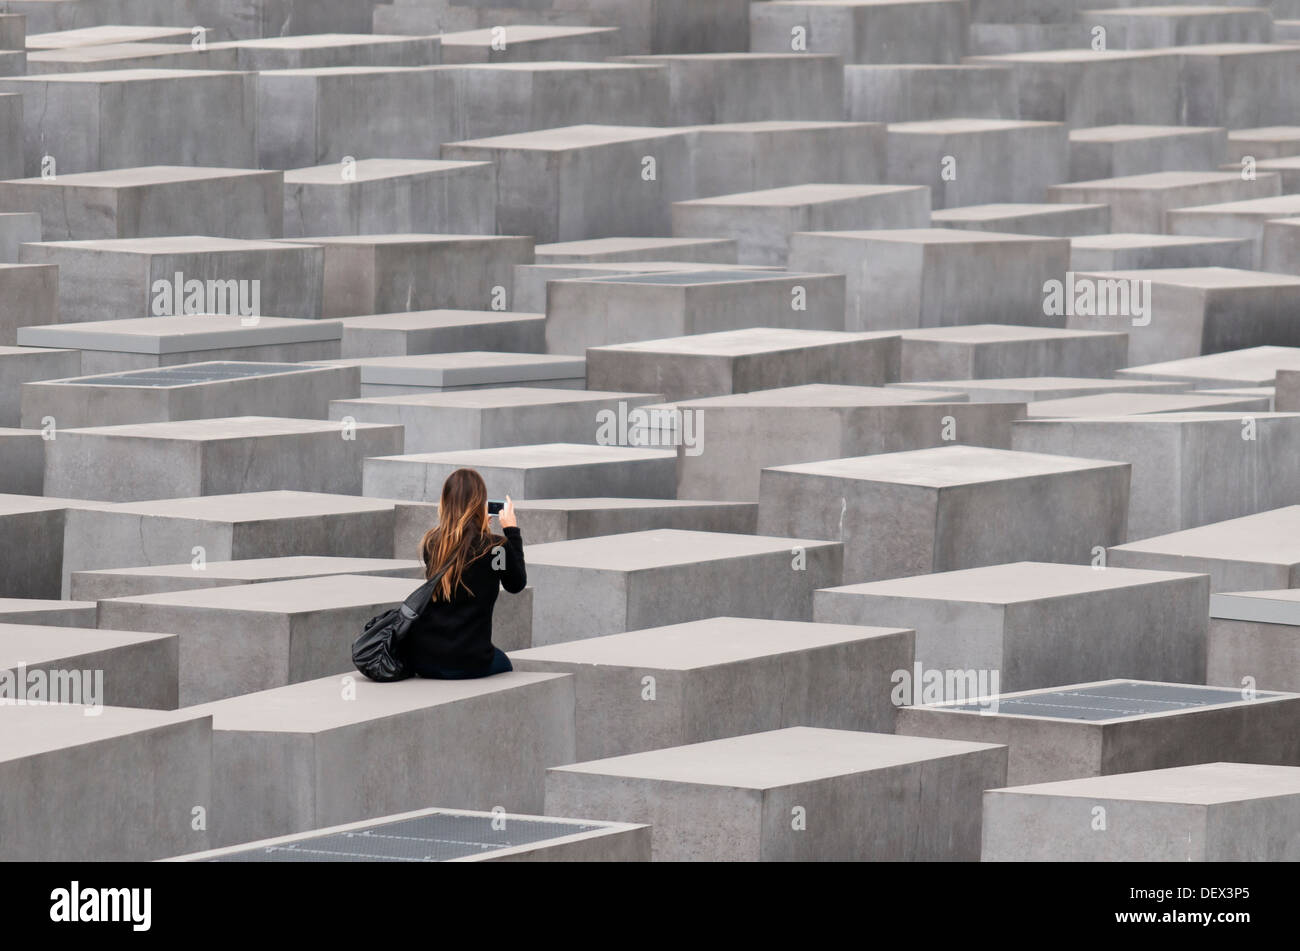 Jeune femme parmi les stèles de béton du Mémorial aux Juifs assassinés d'Europe (Holocaust Memorial), Berlin, Allemagne Banque D'Images